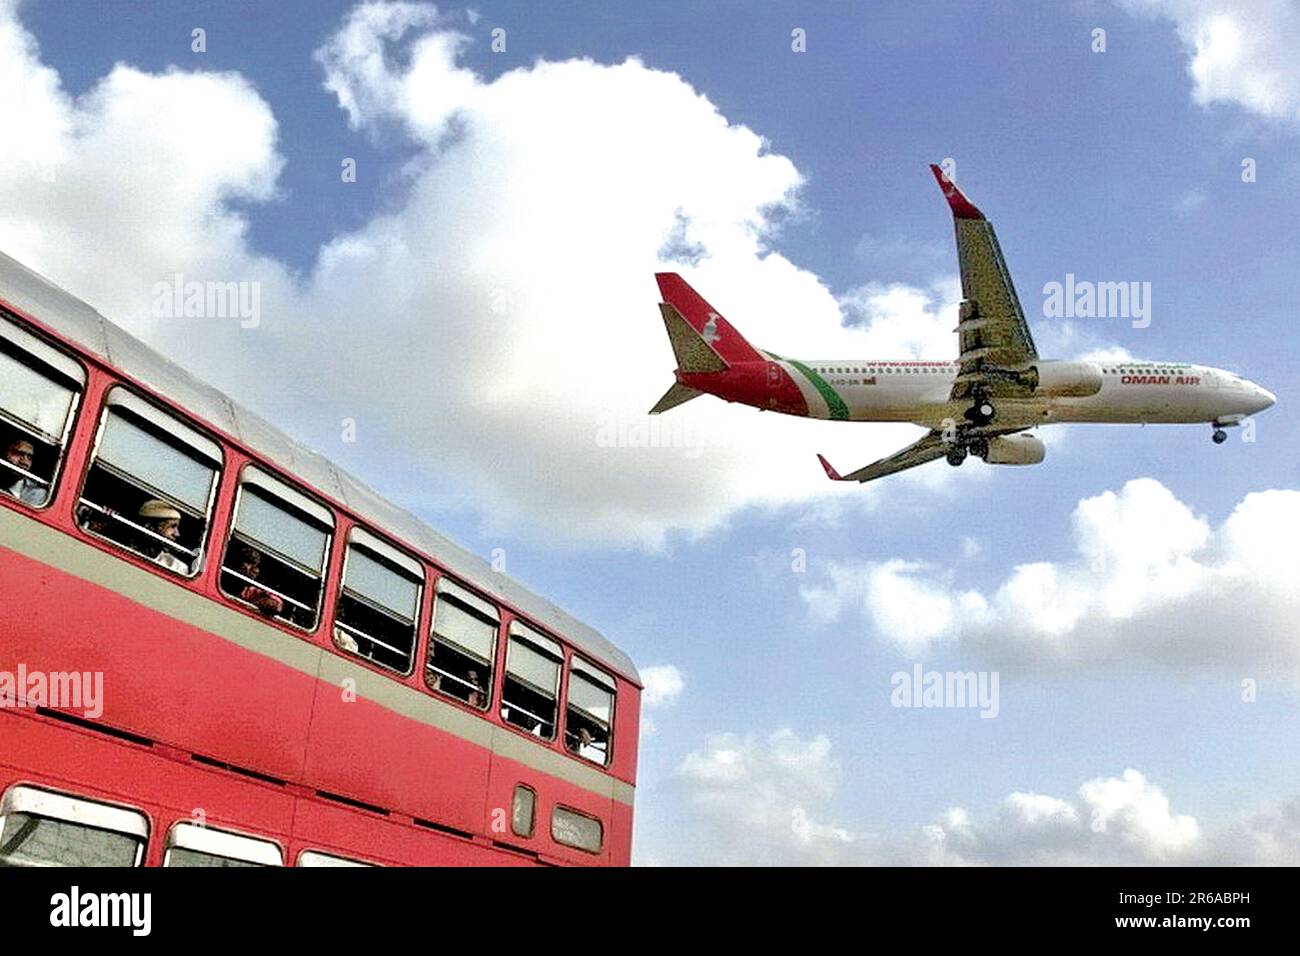 MIGLIOR autobus, Oman Air Plane, Mumbai, India Foto Stock